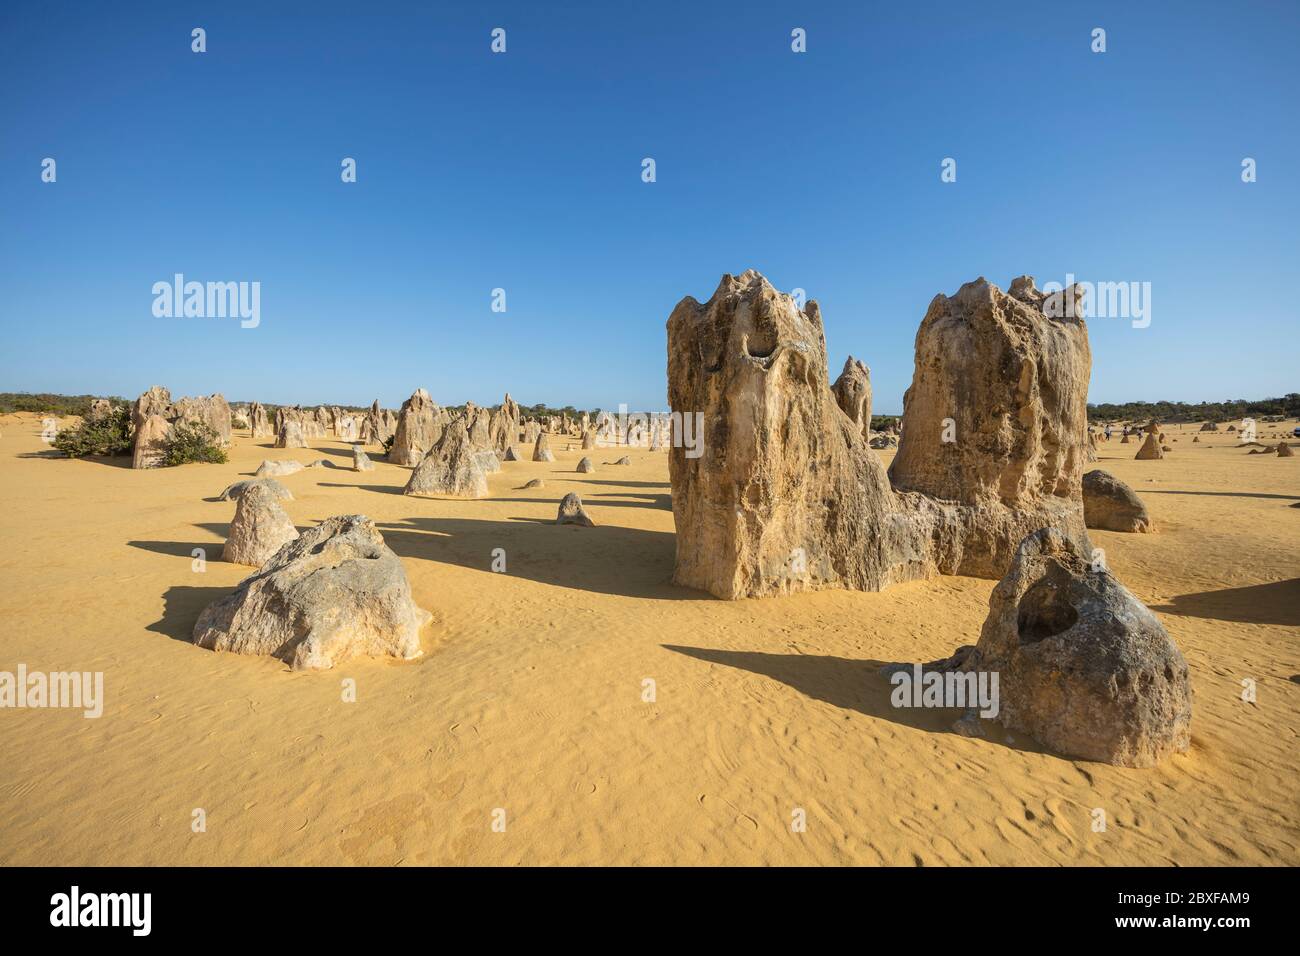 Formations rocheuses calcaires connues sous le nom de Pinnacles dans le parc national de Nambung en Australie occidentale Banque D'Images